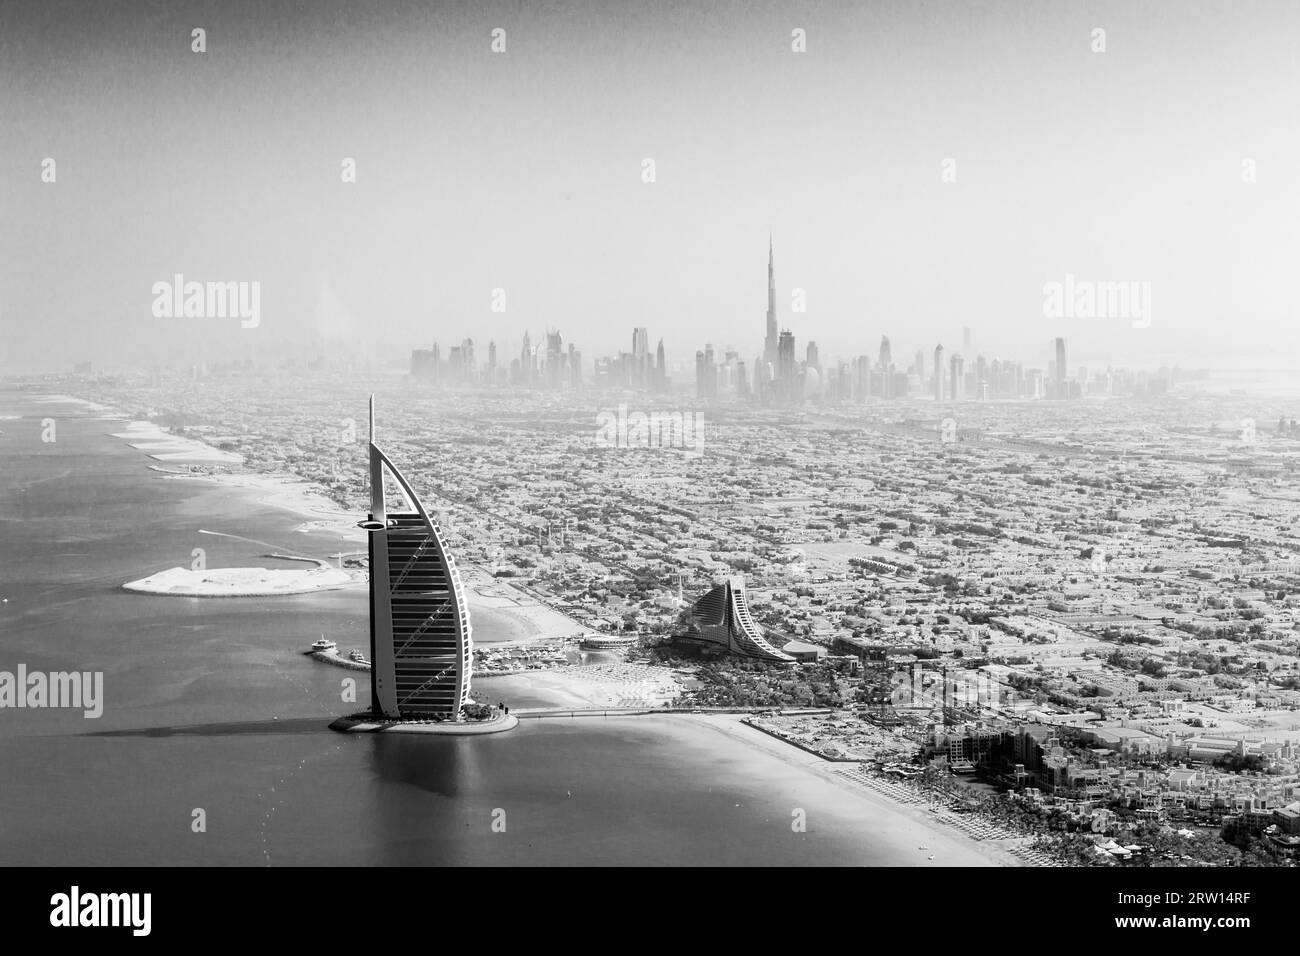 Dubai, Vereinigte Arabische Emirate, 17. Oktober 2014: Das berühmte Burj Al Arab Hotel und die Skyline von Dubai, die von einem Wasserflugzeug in Schwarz-weiß genommen werden Stockfoto